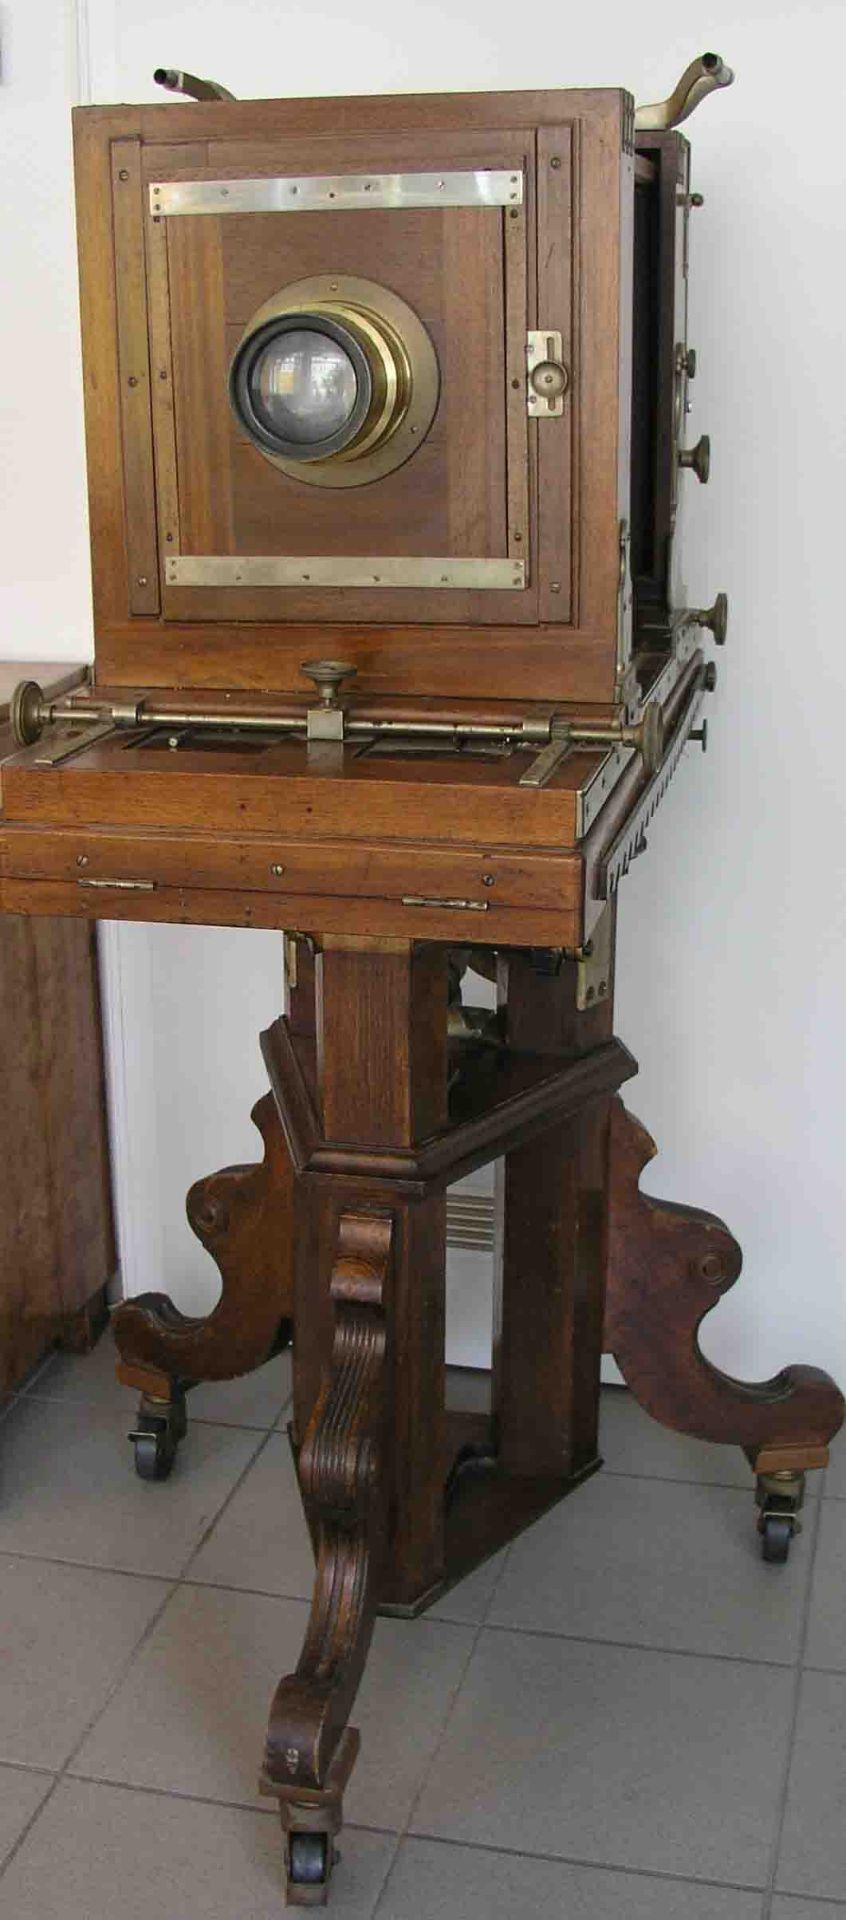 Studiokamera um 1890 auf Salonstation. Höhe: 139cm. Altersspuren, Funktion nicht geprüft. - Image 2 of 2